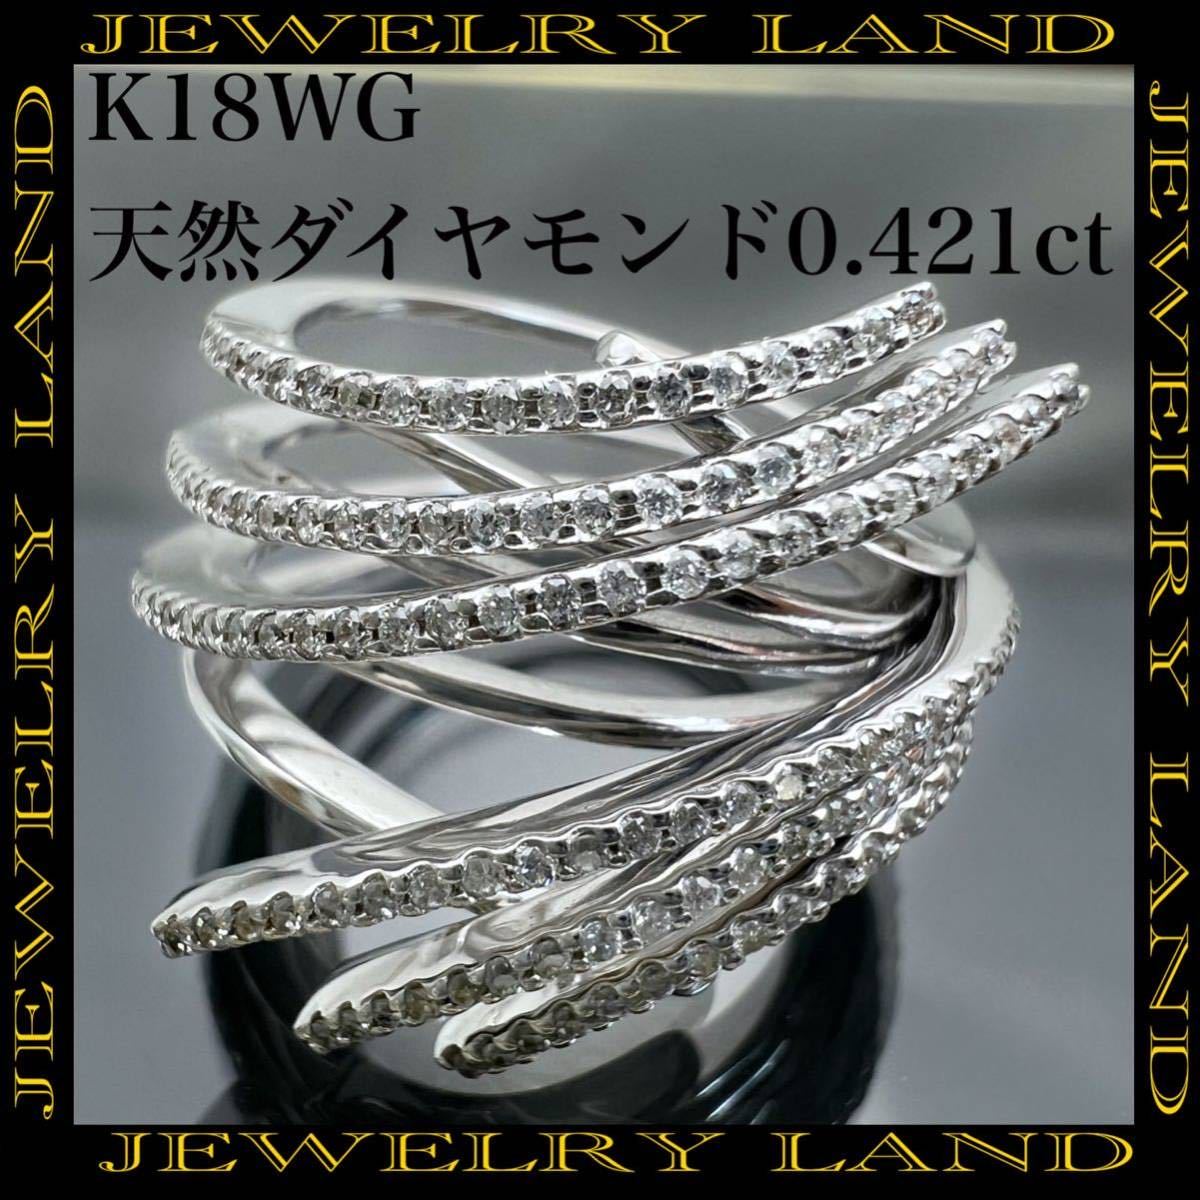 超歓迎された 天然 k18WG ダイヤモンド リング ダイヤ 0.421ct